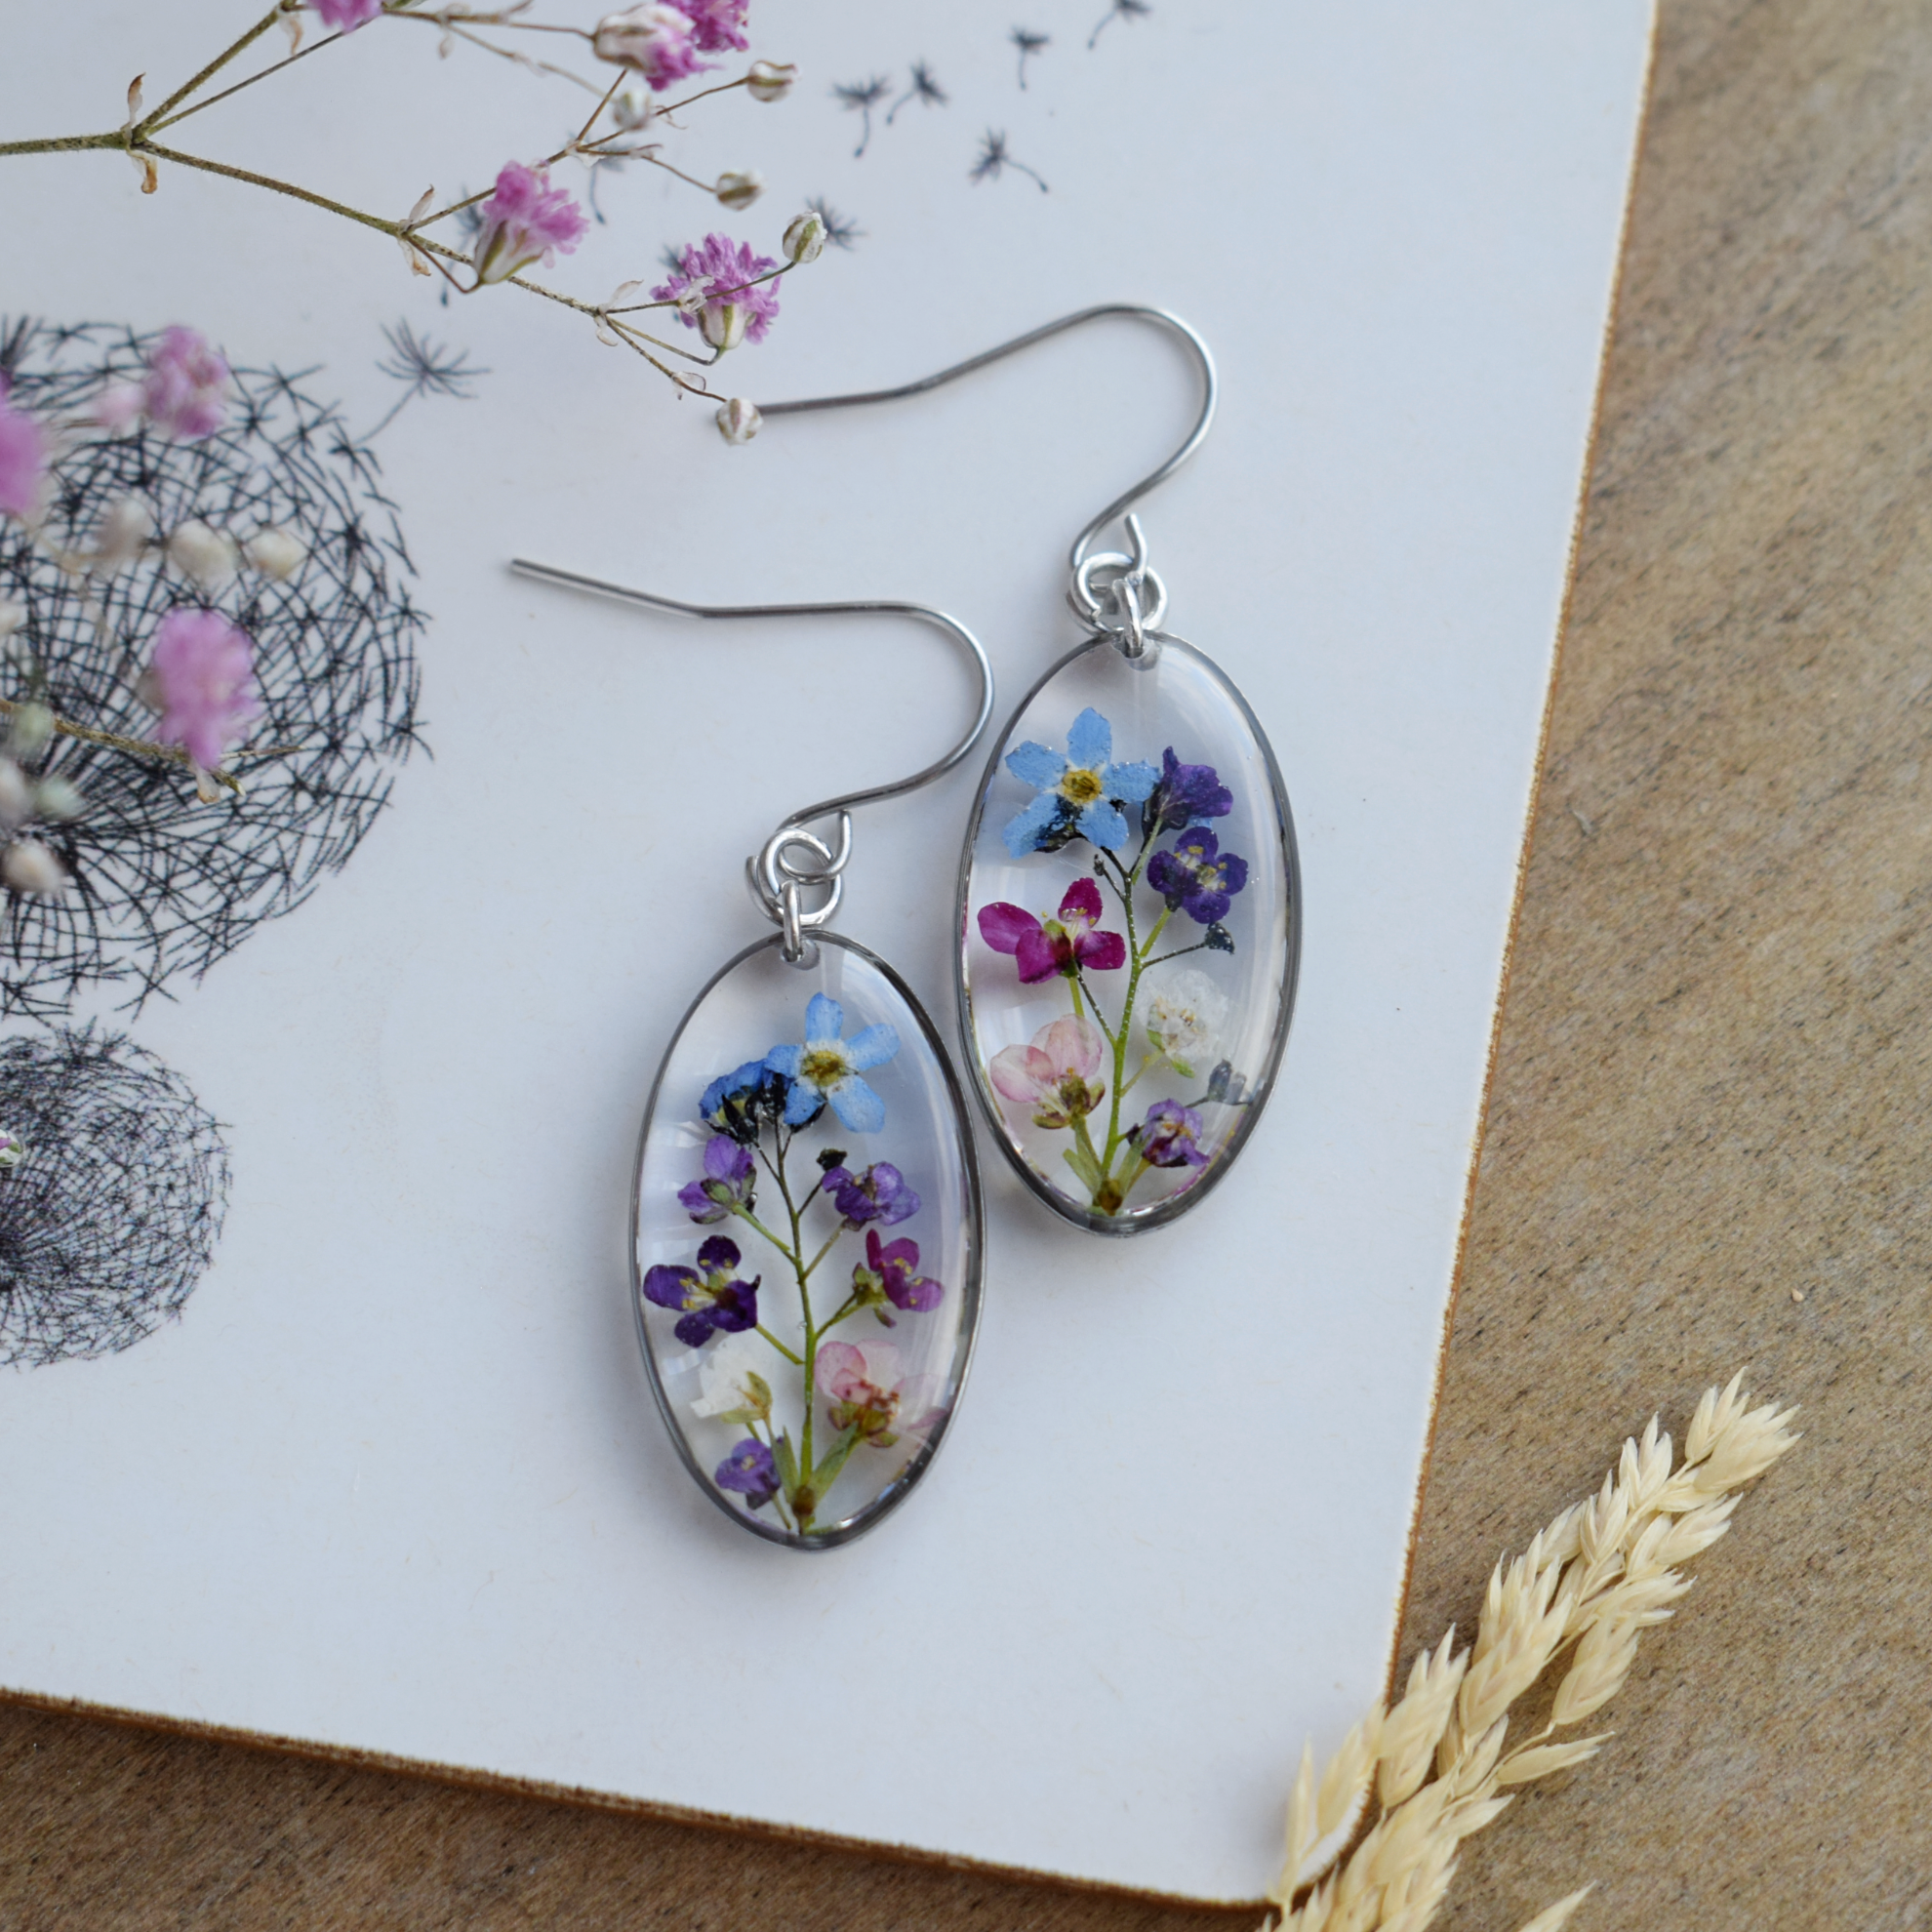 Dried flower handmade resin earrings, Pressed rose earrings, Oval shape  earrings, Real flower earrings, Hypoallergenic earrings